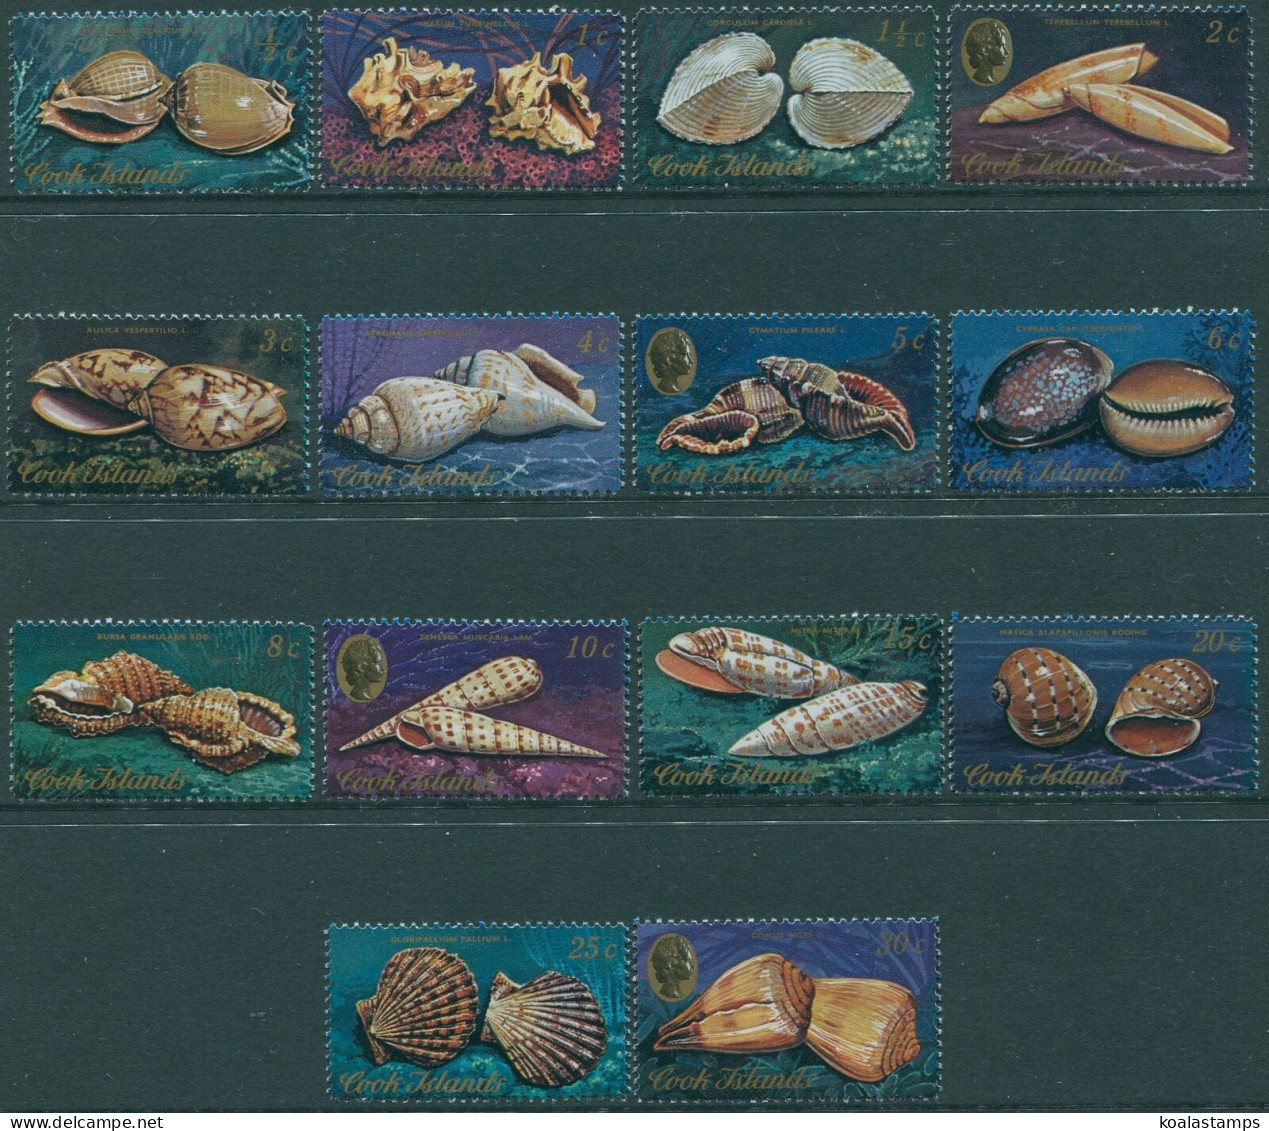 Cook Islands 1974 SG466-479 Shells (14) MNH - Cook